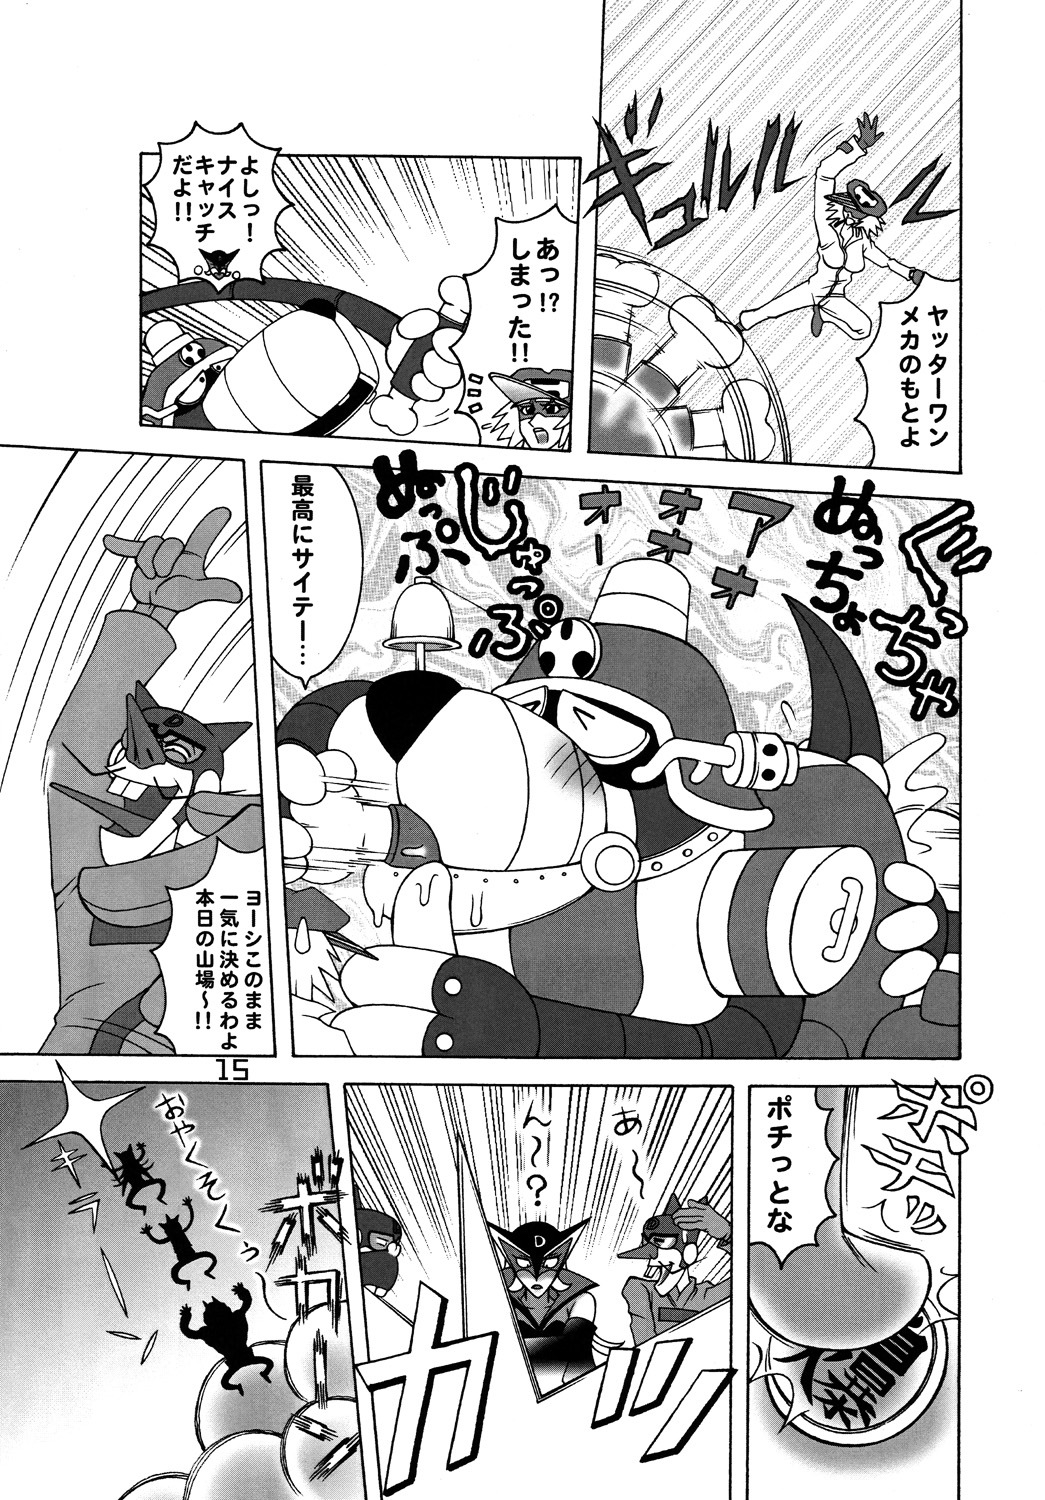 [DYNAMITE HONEY] Tatsunoko Dynamite page 14 full